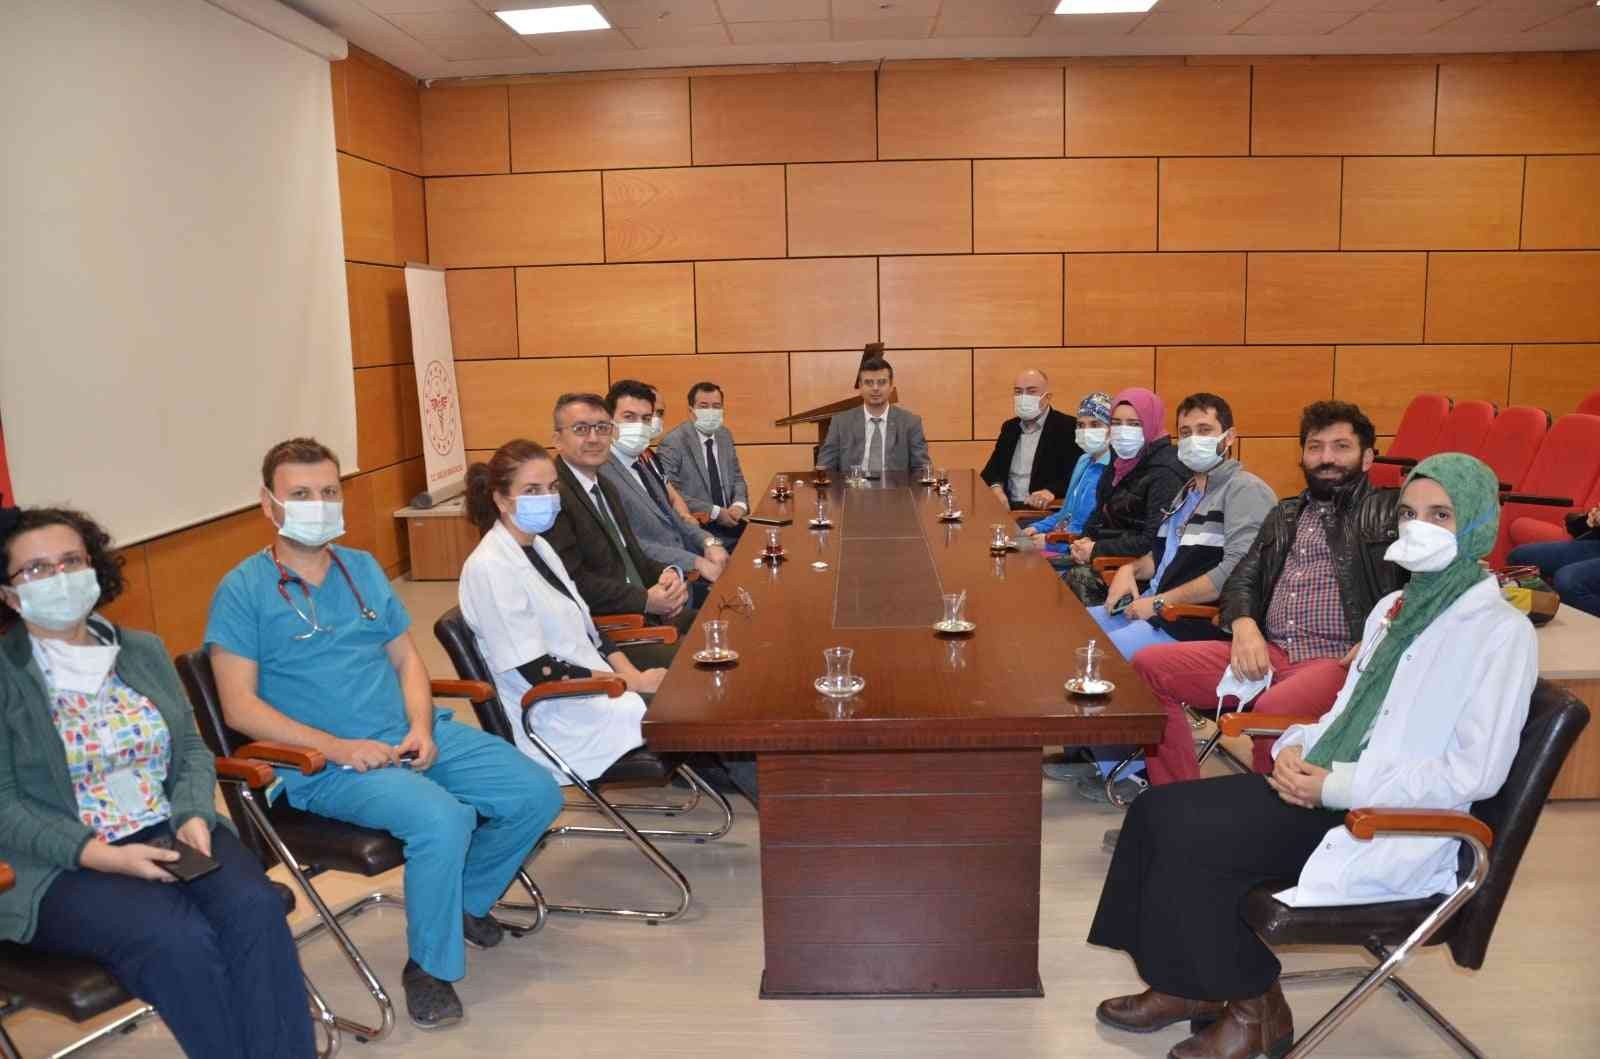 Afyonkarahisar’da çocuk hekimleri toplantı yaptı #afyonkarahisar